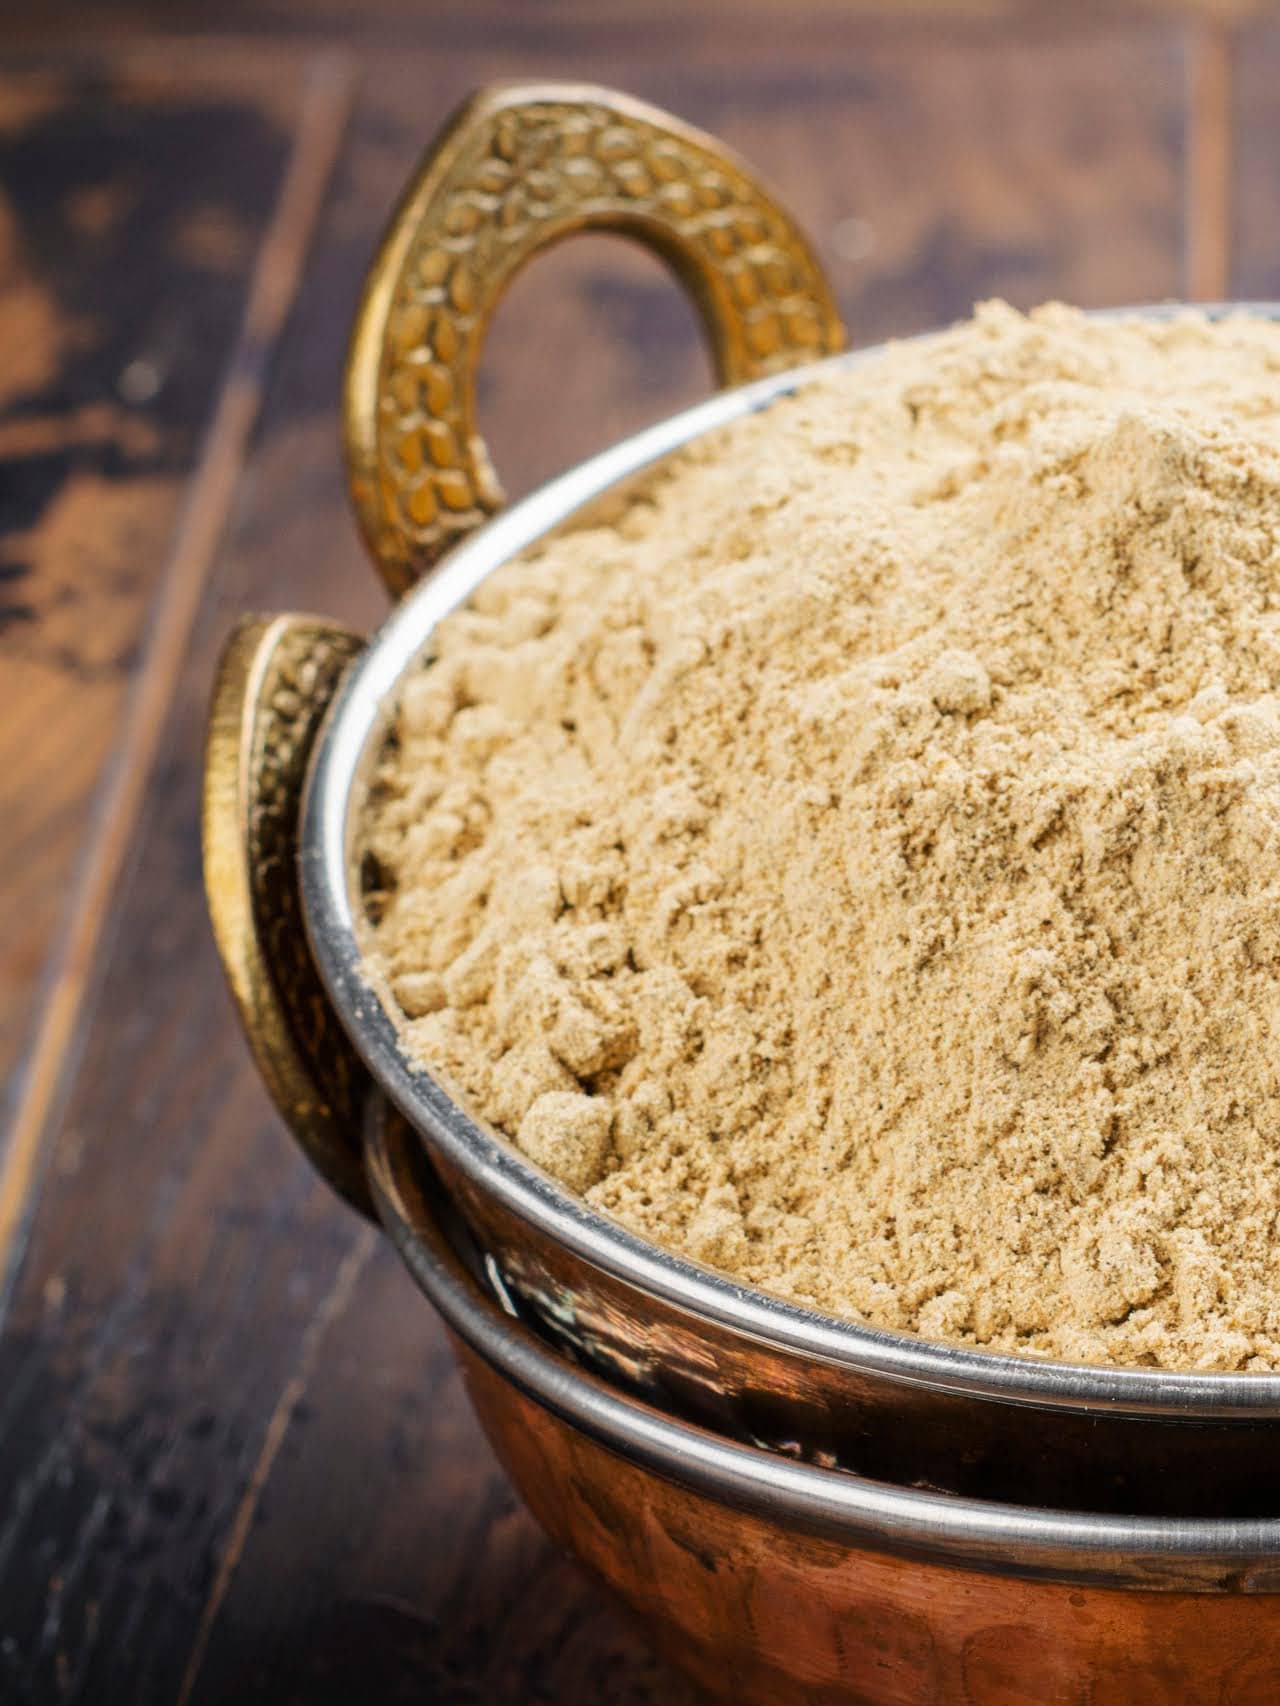 Do You Know the Mesquite Powder Health Benefits?